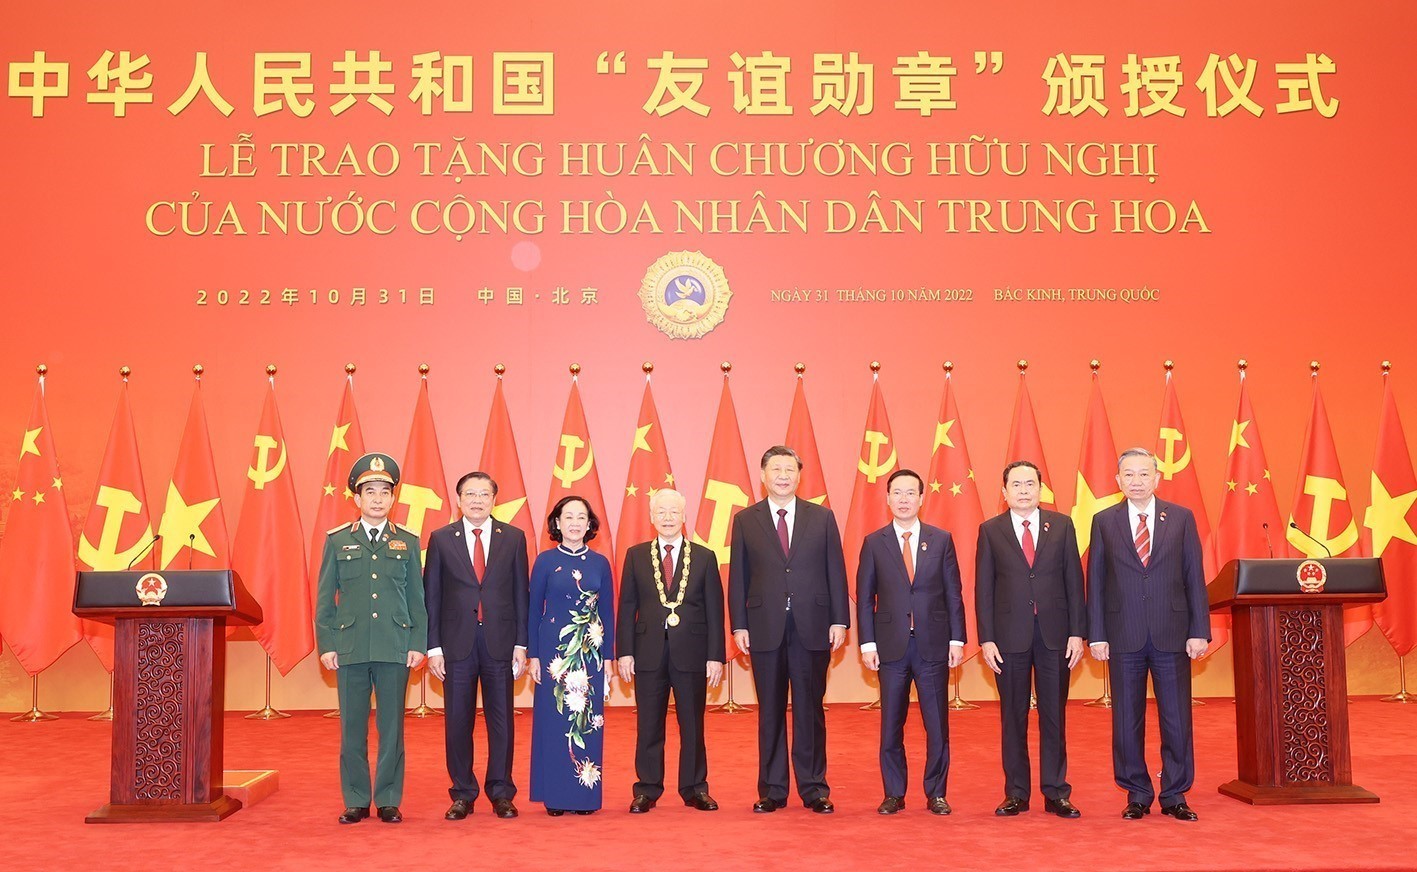 Lễ trao tặng nước Việt Nam Huân chương Hữu nghị nước CHND Trung Hoa